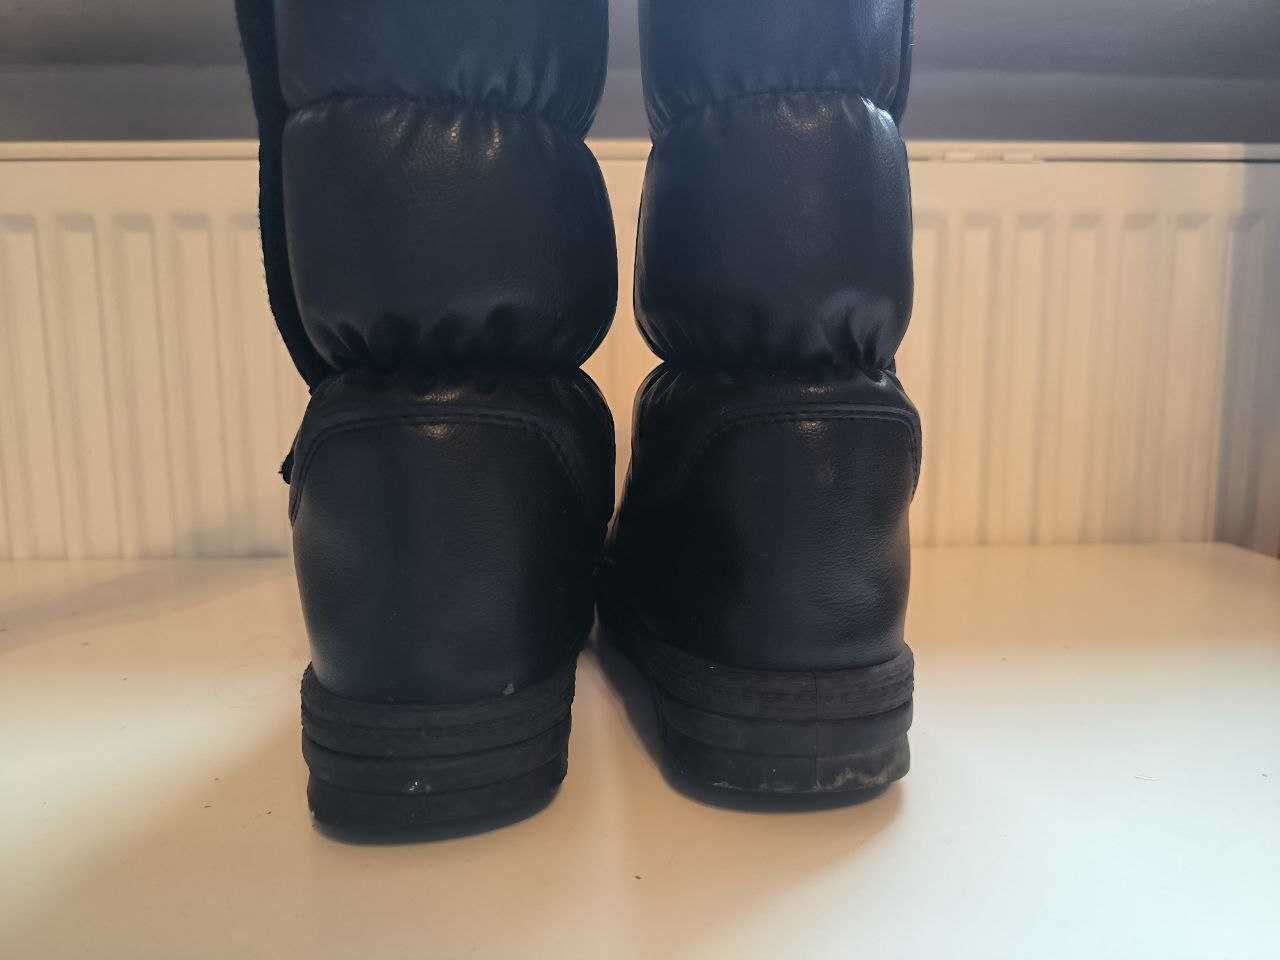 Damskie buty zimowe SKARPOL r.37